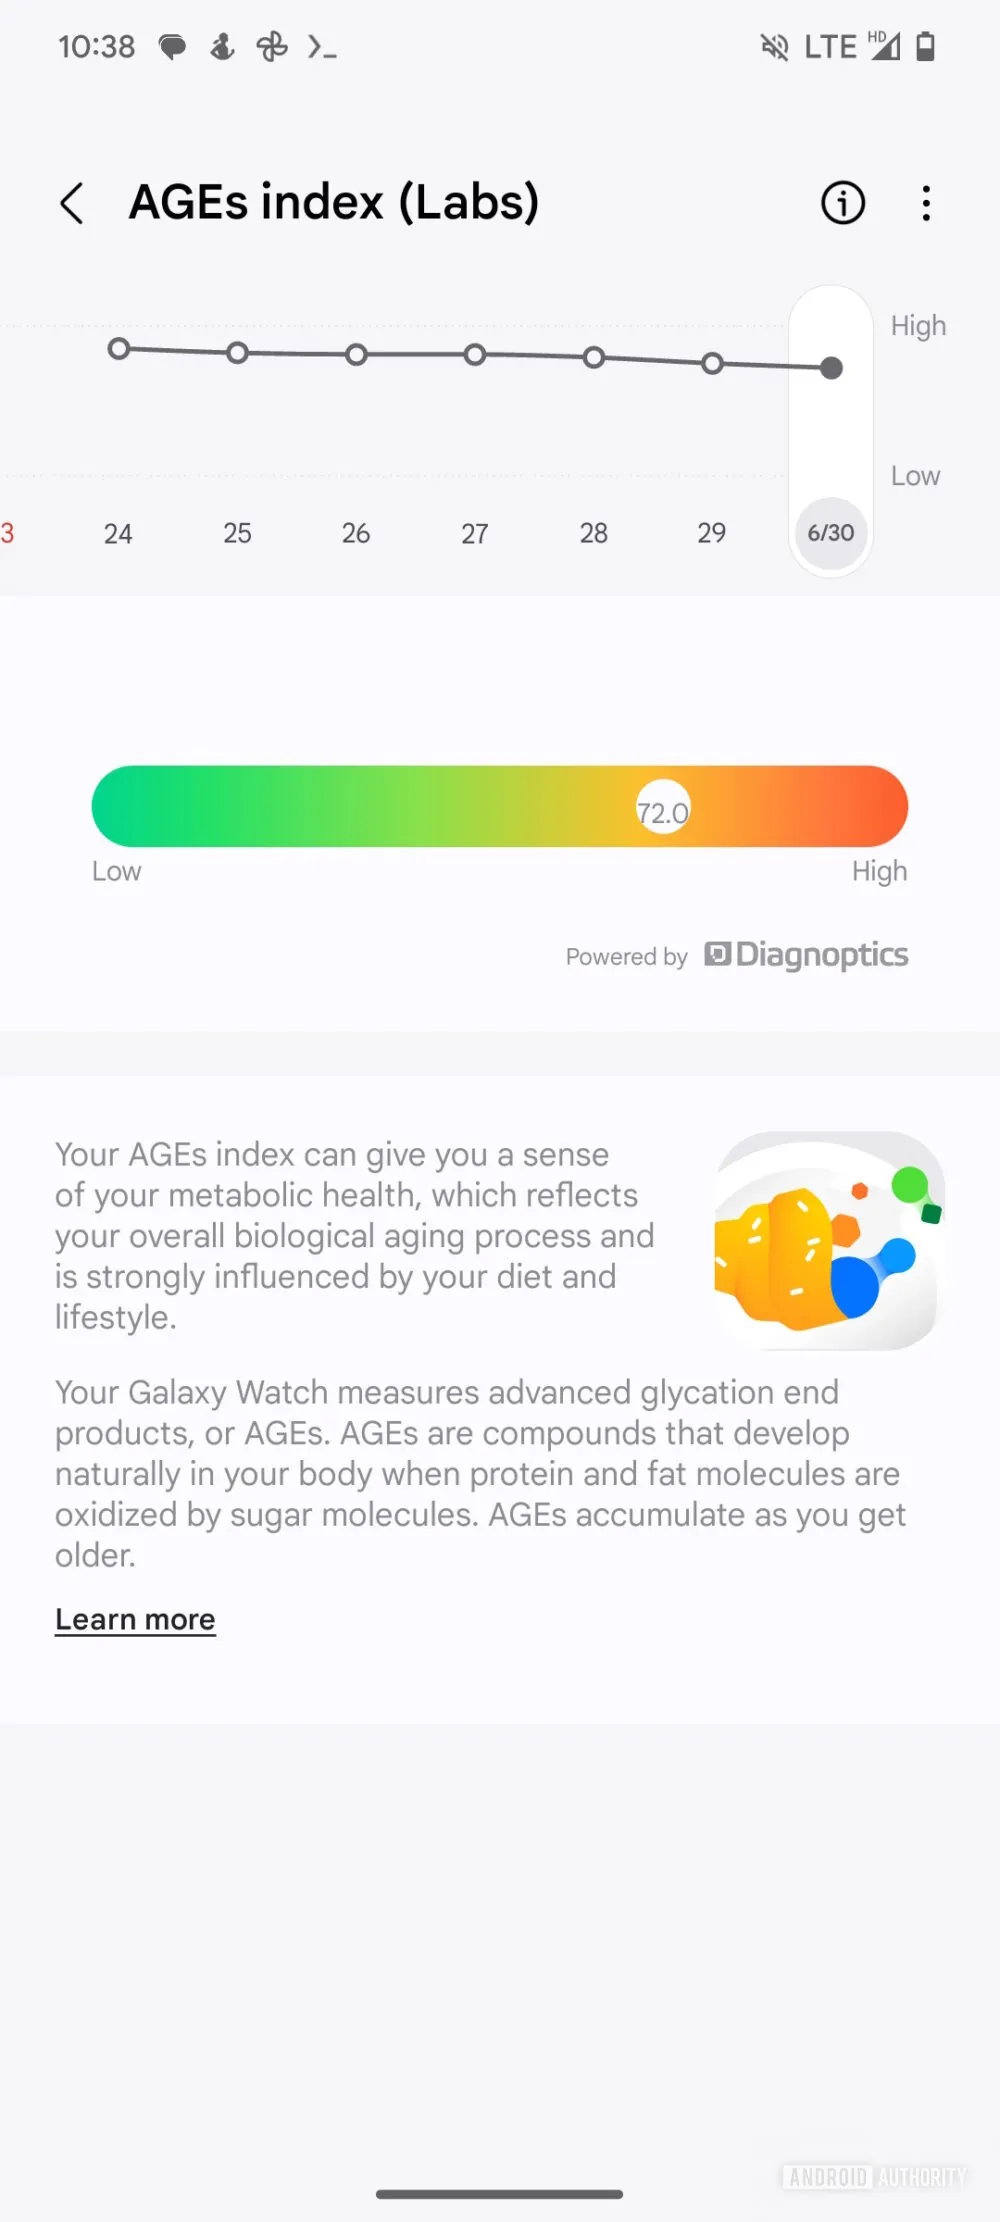 Samsung-Health-Galaxy-Watch-7-AGEs-index-1000w-2222h.jpg.jpg